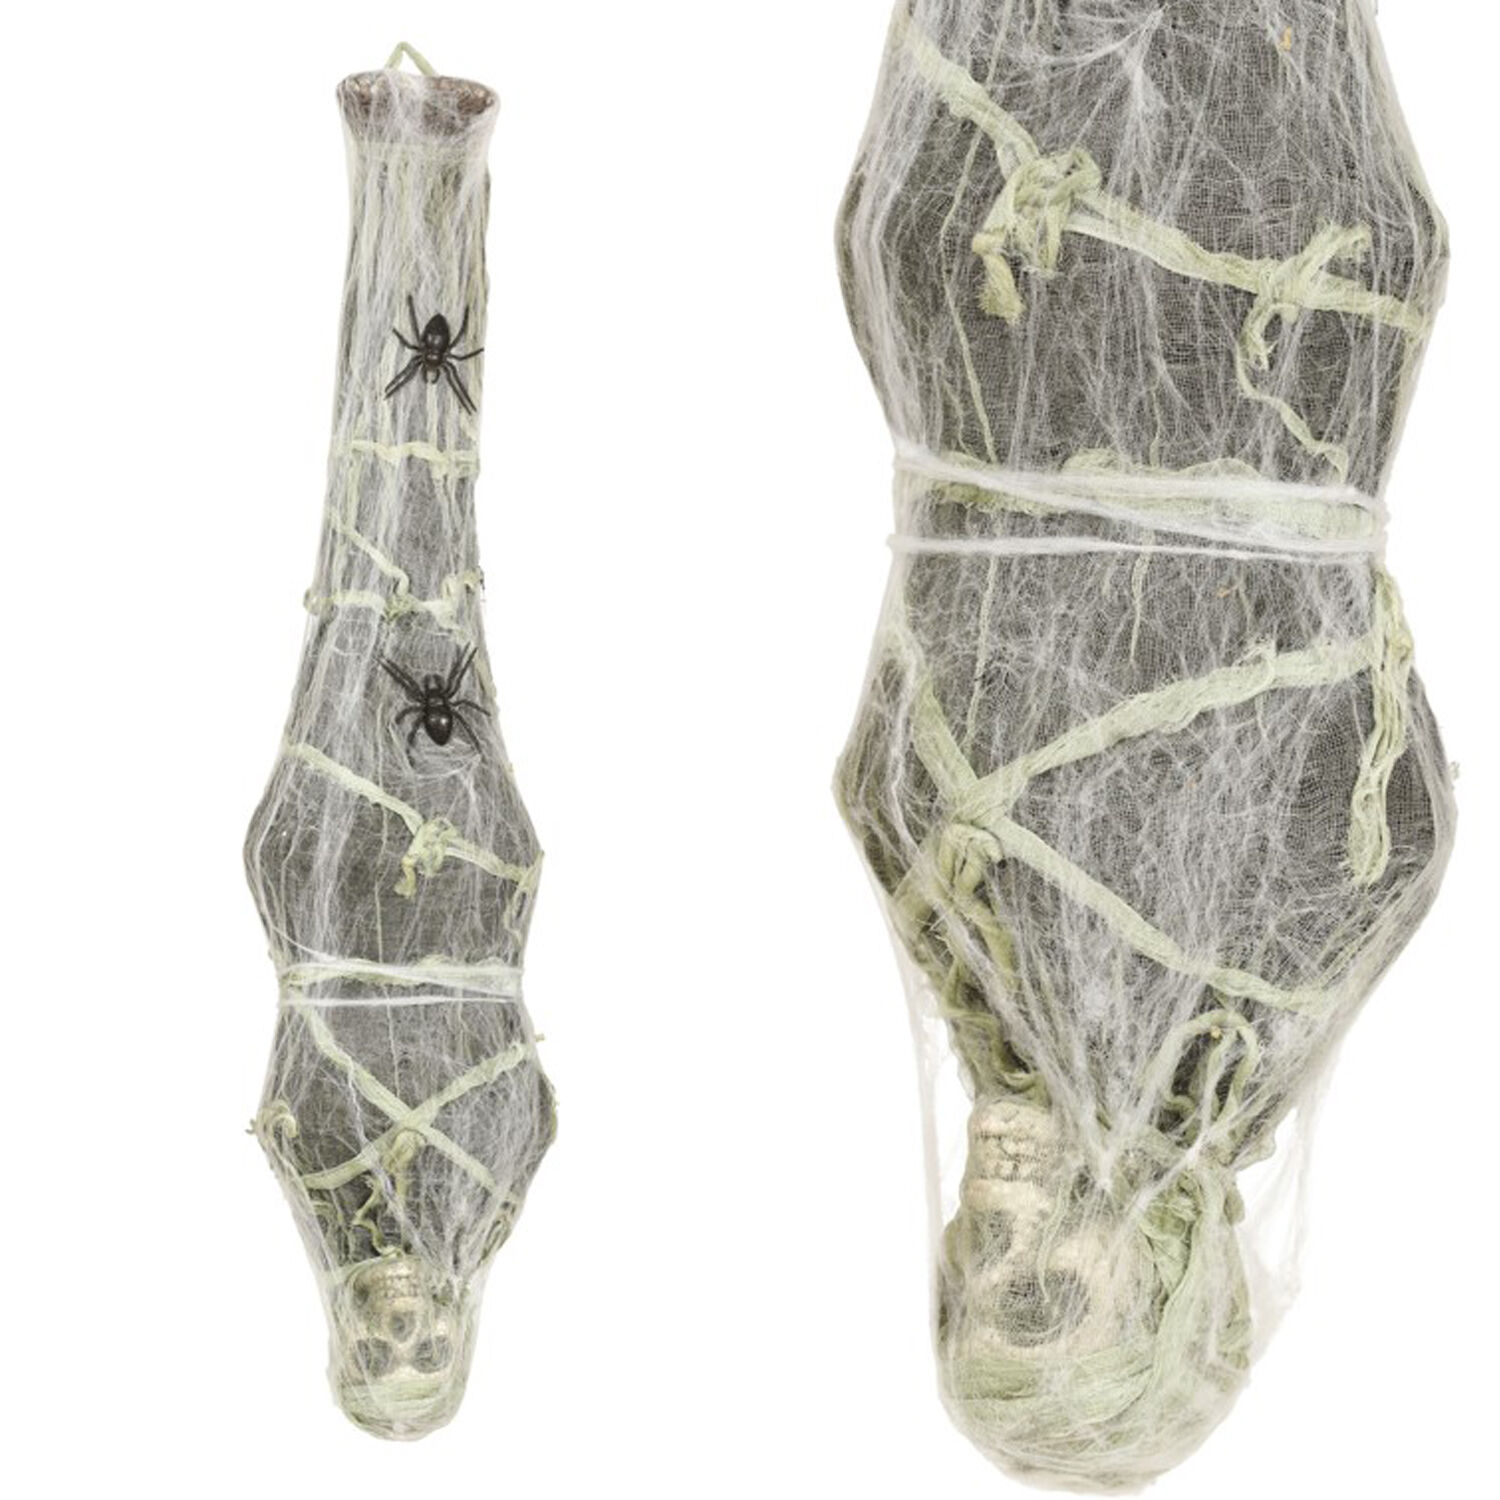 NEU Halloween-Deko-Figur Skelett-Mumie im Spinnennetz, ca. 120cm